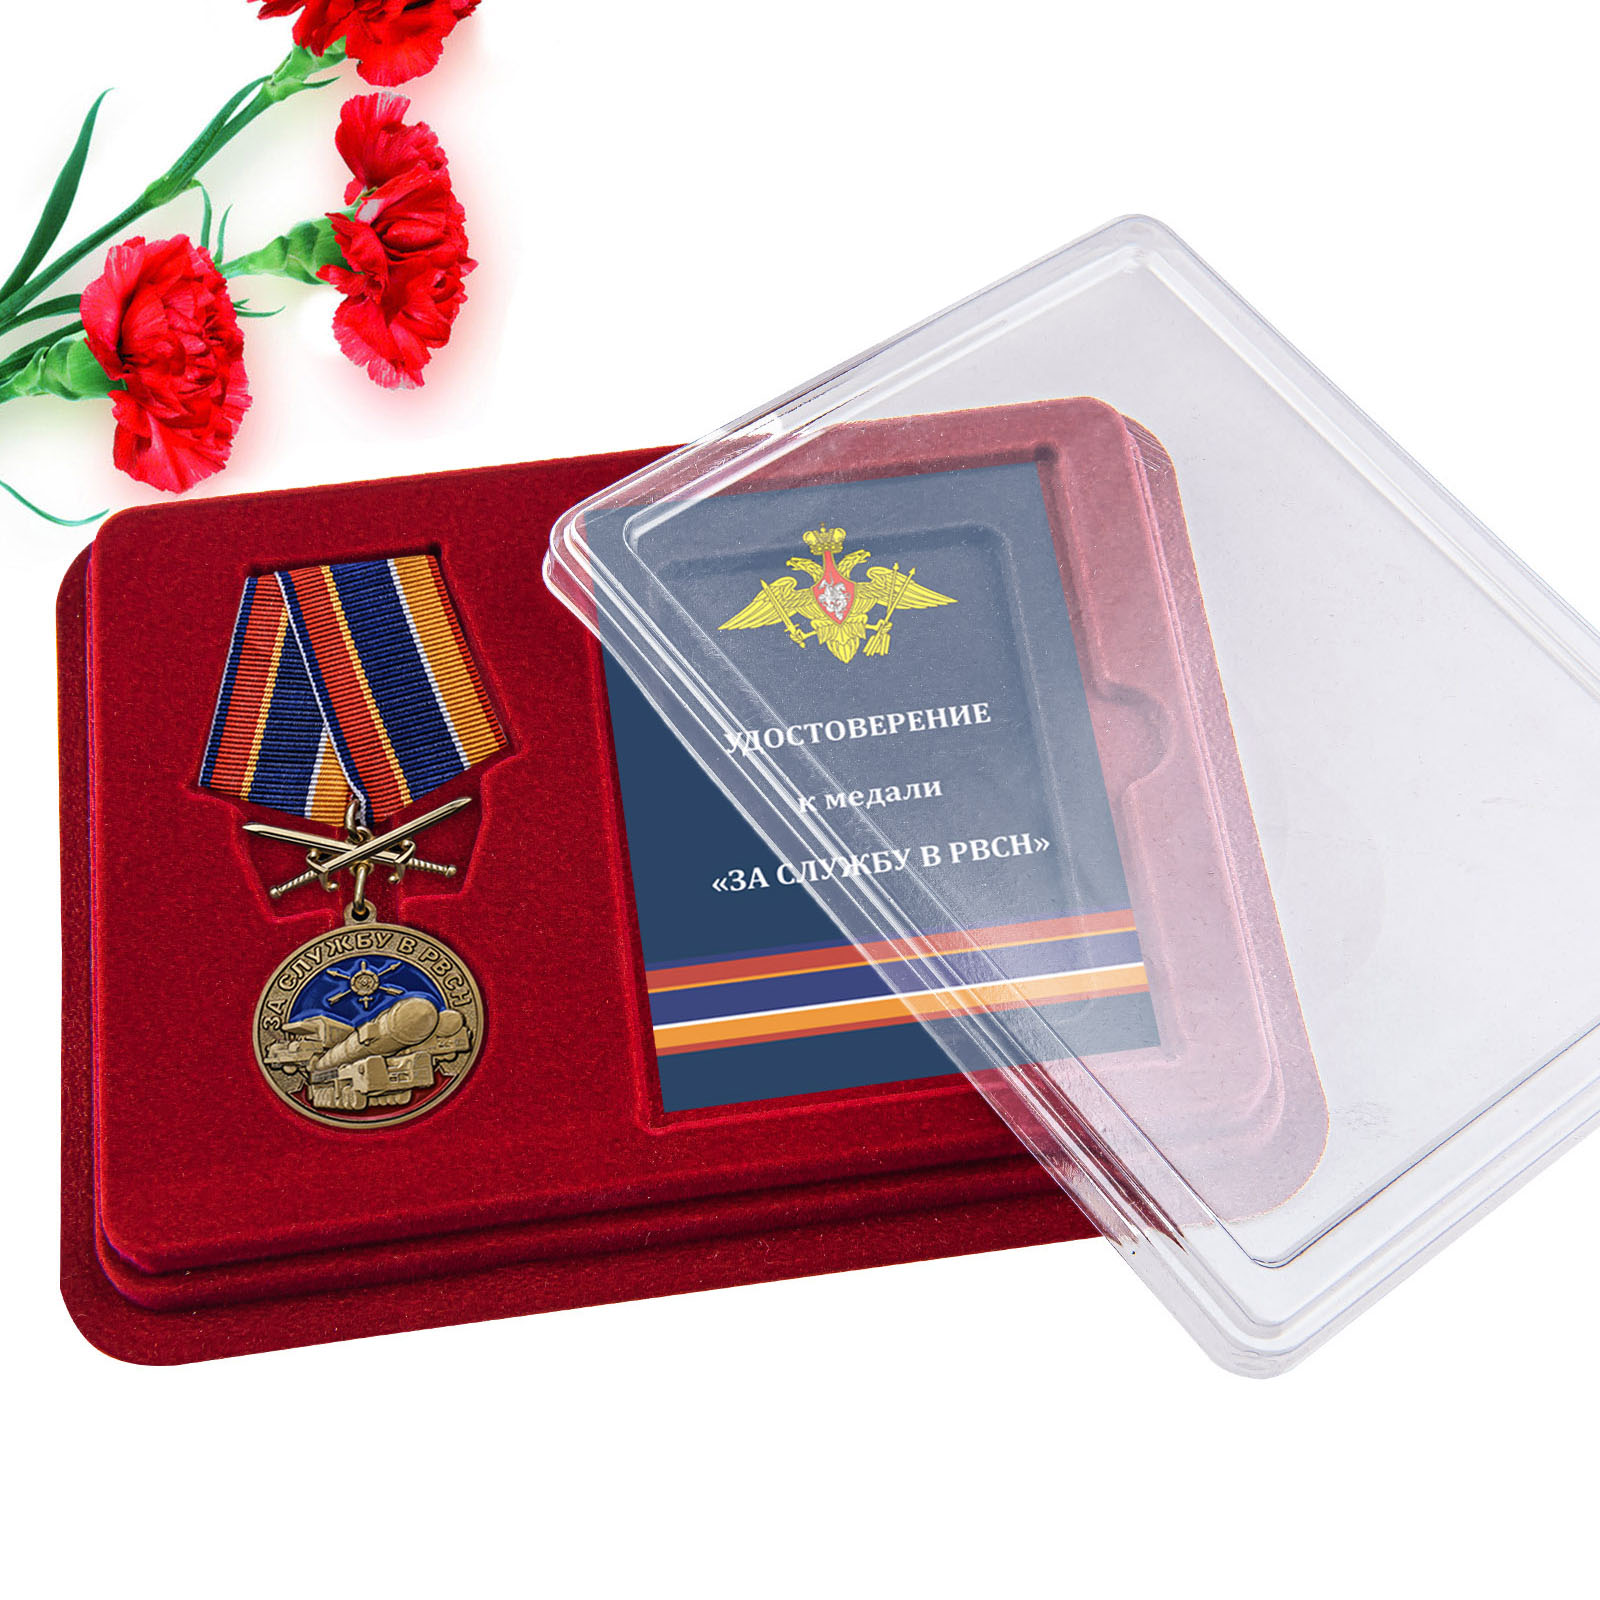 Купить медаль За службу в РВСН онлайн в подарок